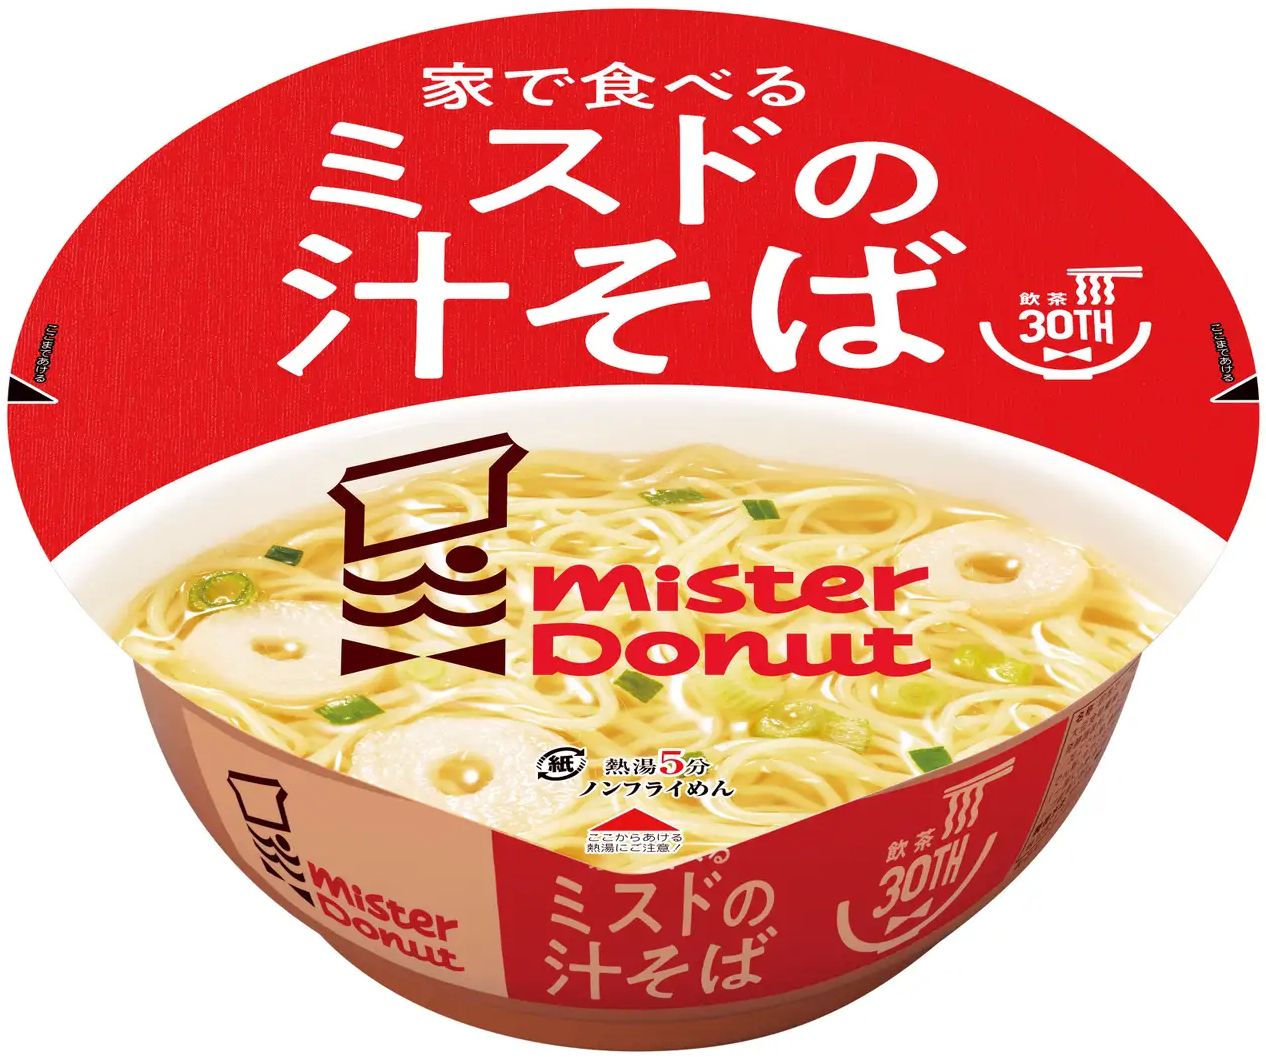 ミスタードーナツ カップ麺「家で食べるミスドの汁そば」(テイクアウト専用)